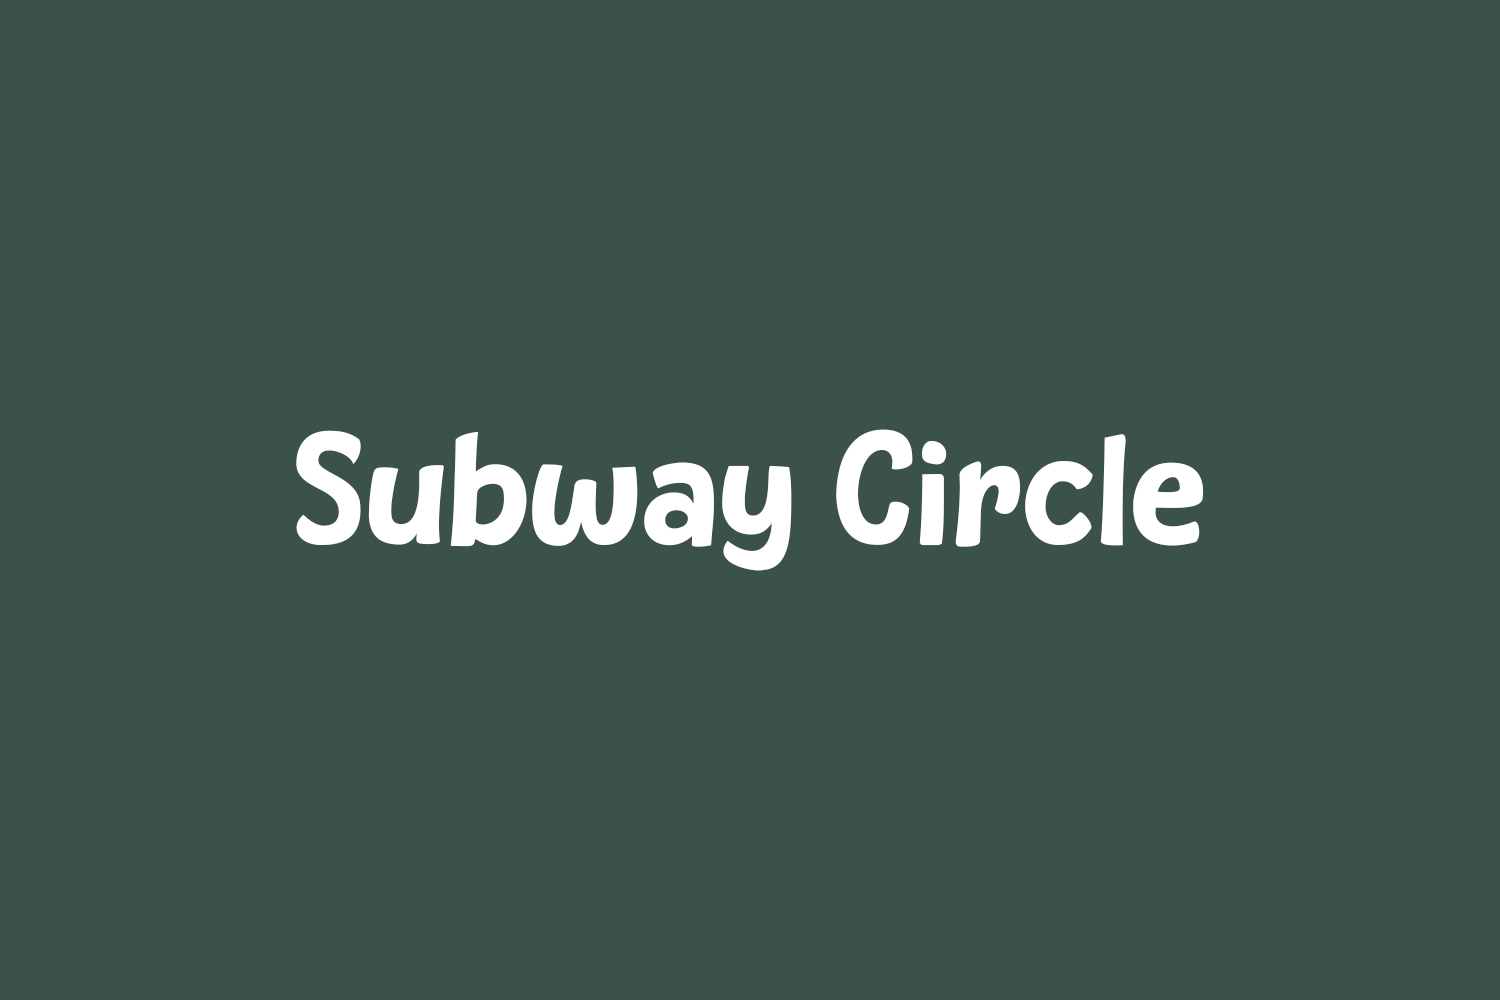 Subway Circle Free Font